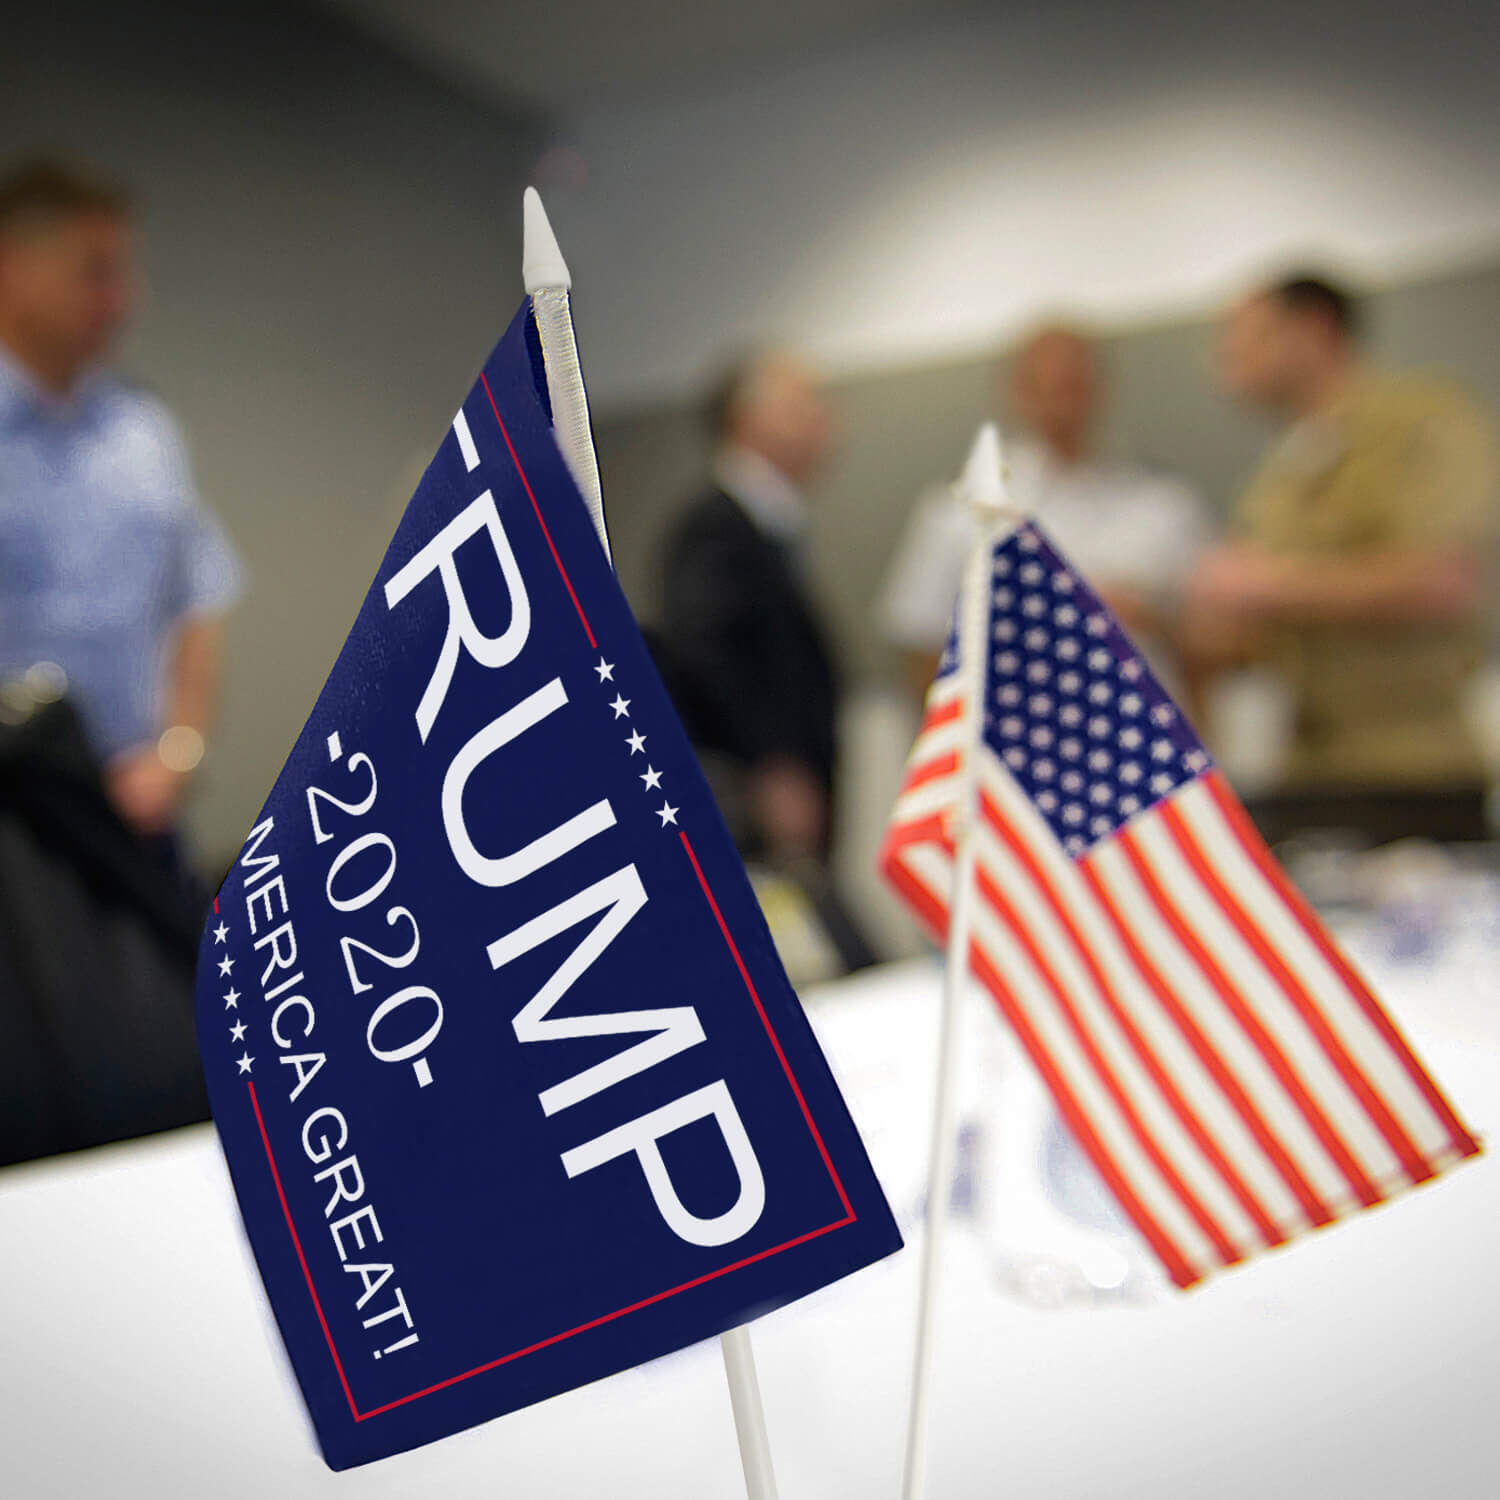 Elecciones Presidenciales Estados Unidos 2020 Paquete de 3 Coche y Camión Pegatina Reflectiva para Parachoques ANLEY 22 X 7 cm Pegatina Trump 2020 